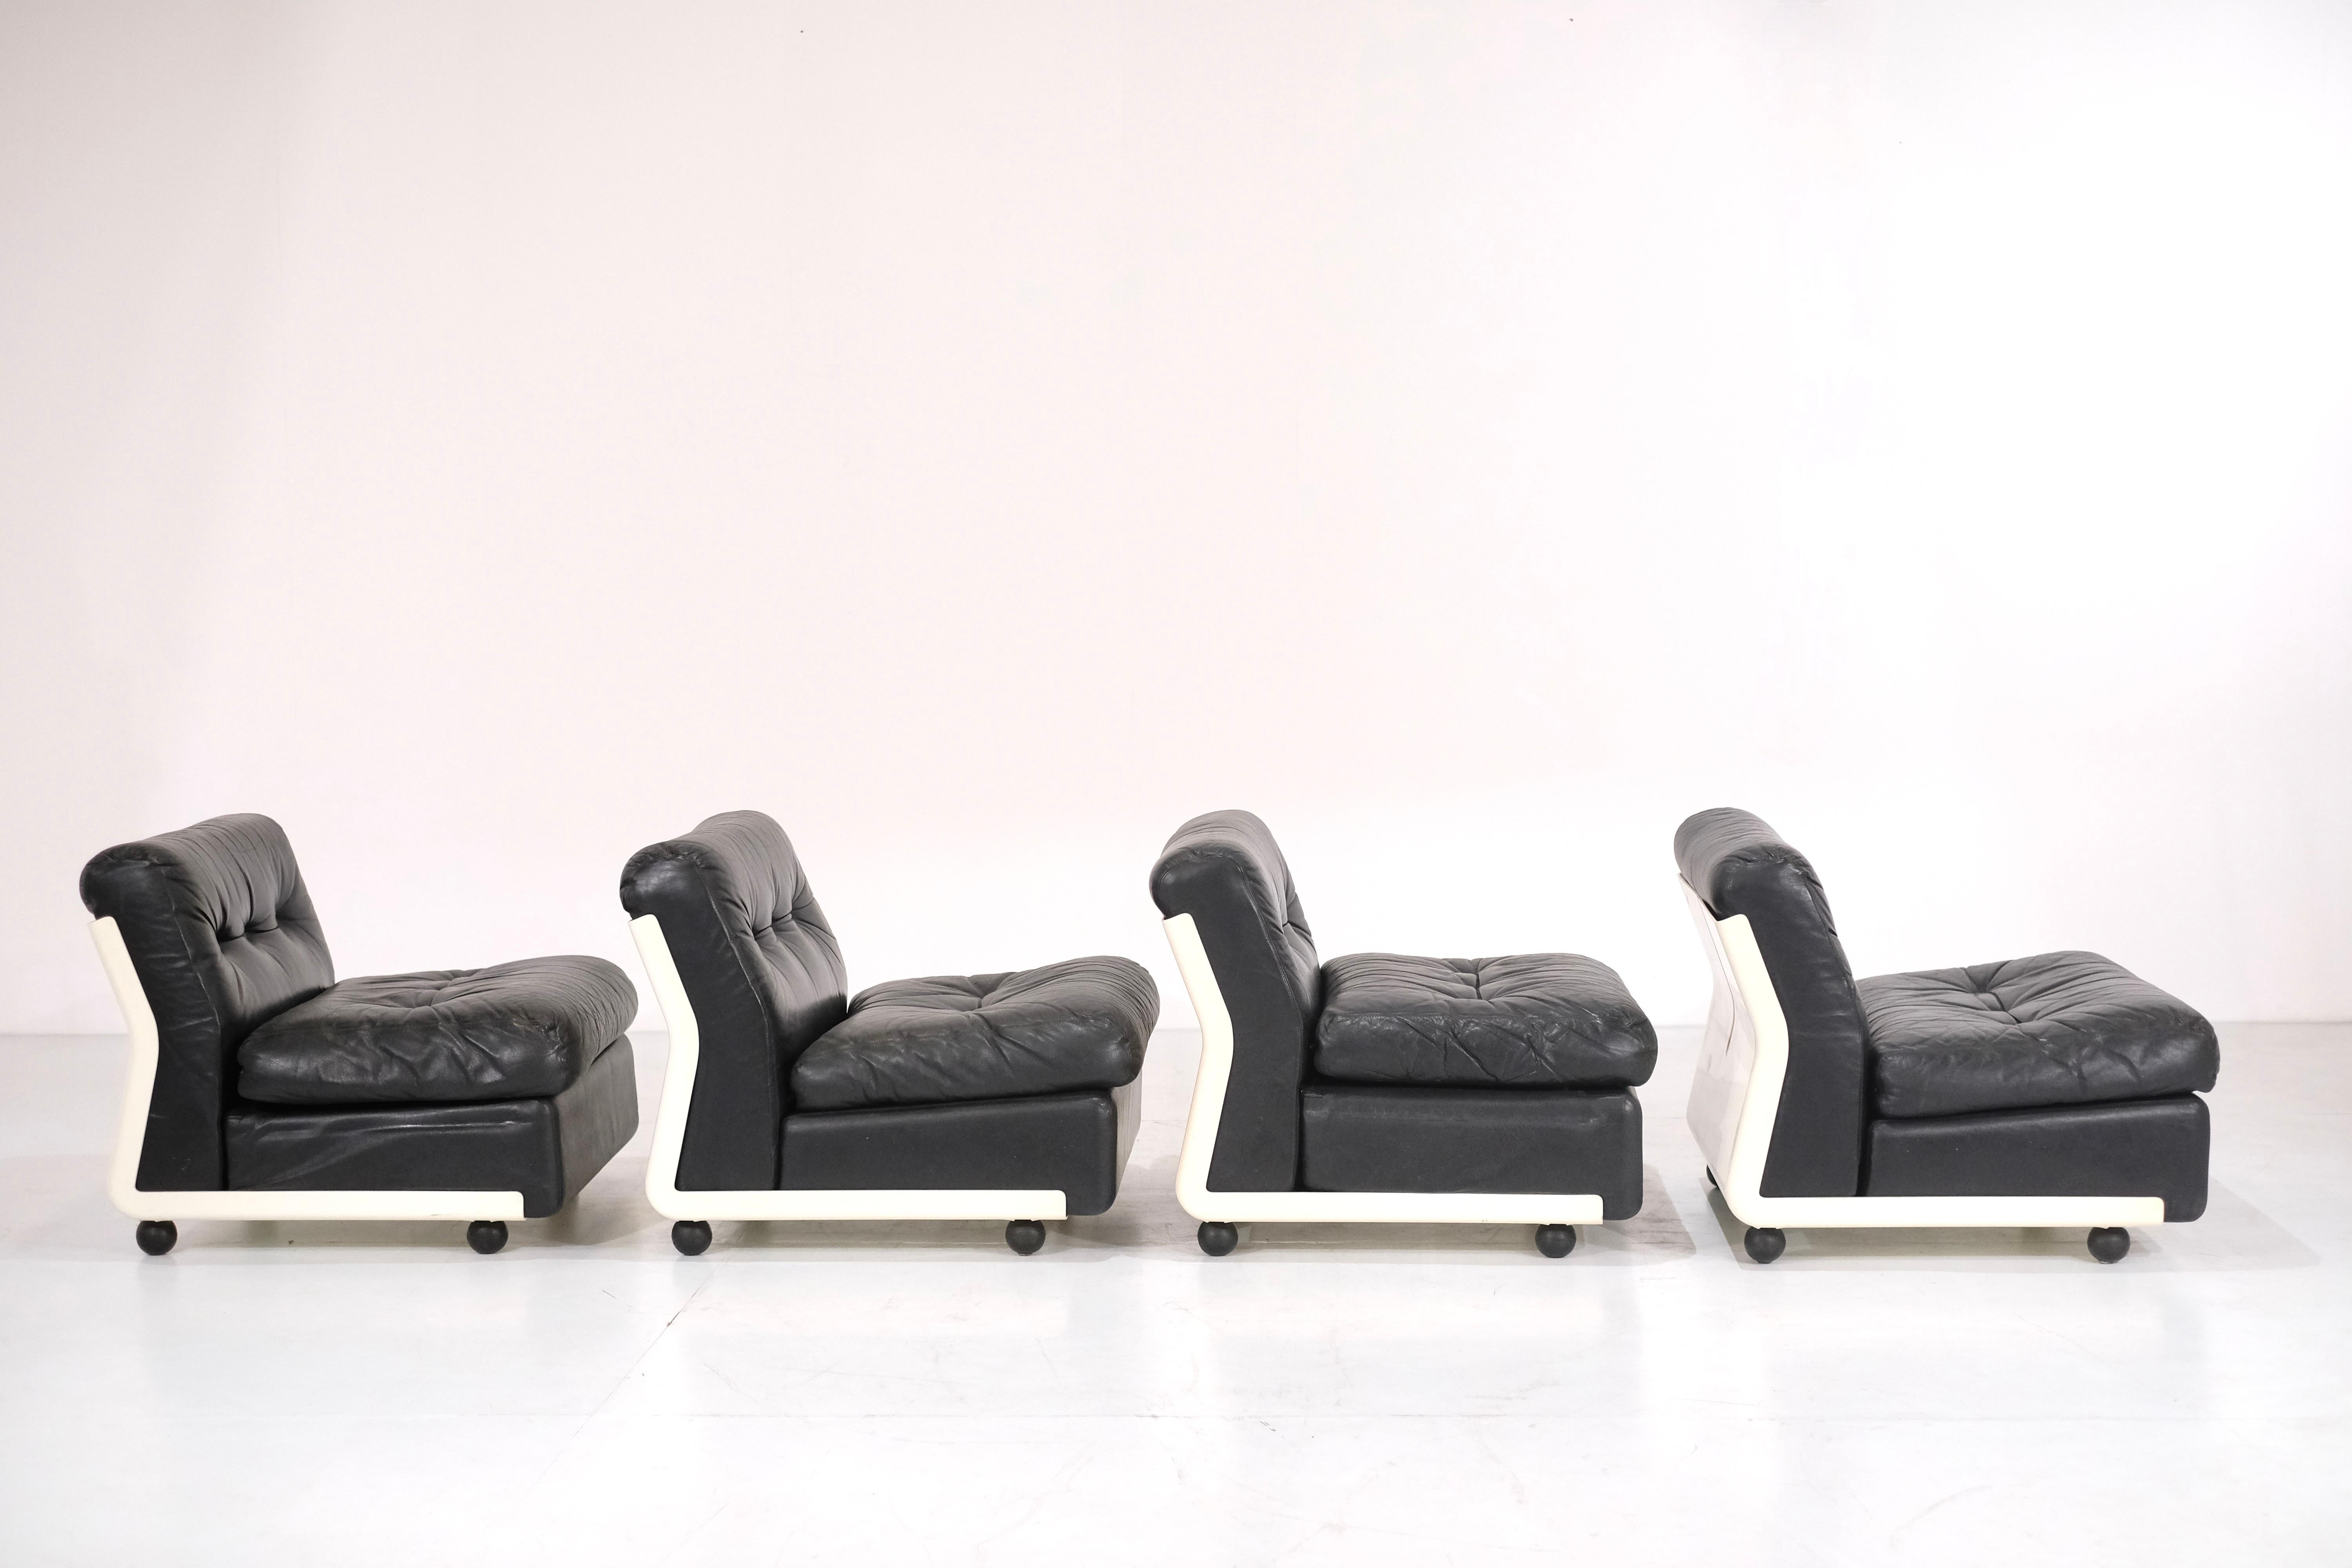 Erstaunliches Set von 4 Amanta Sesseln aus schwarzem Leder  entworfen von Mario Bellini für C&B Italia im Jahr 1966.

Das Leder ist in wirklich gutem Zustand mit einer erstaunlichen Patina. Sie sind in wirklich gutem Zustand mit einigen